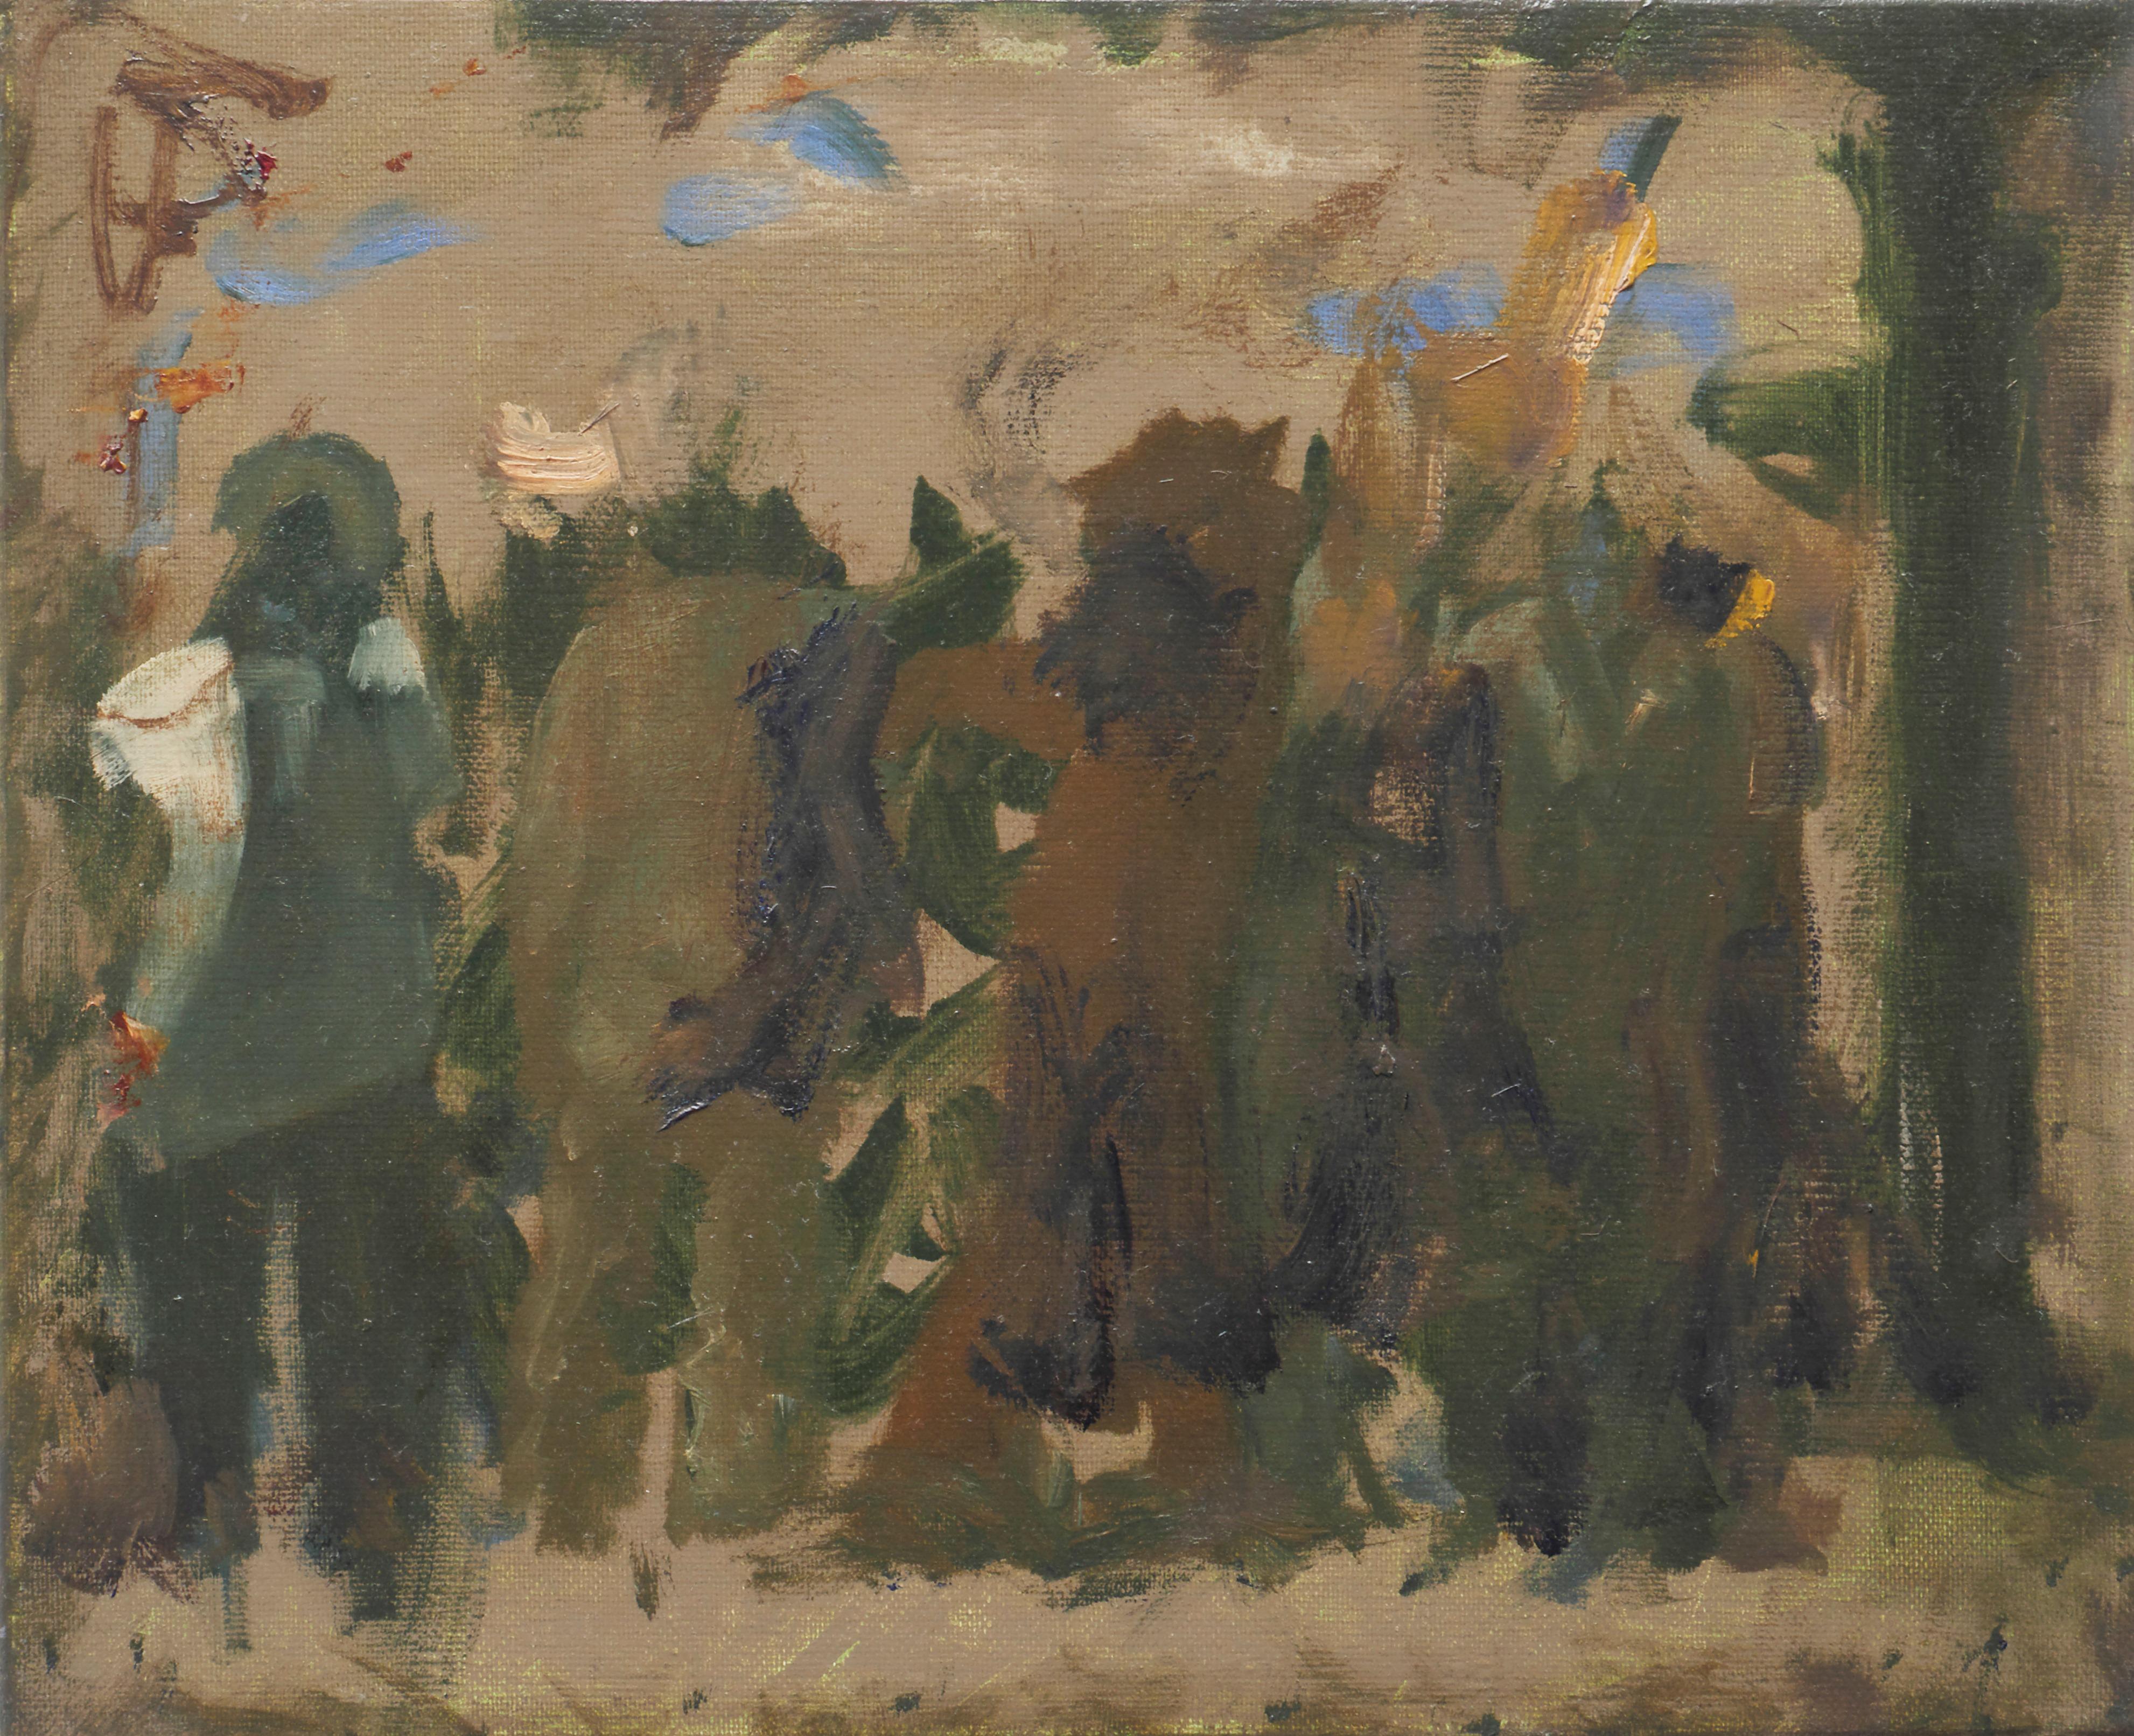 Démonstration de la rue - Peinture à l'huile figurative contemporaine, Existentialisme  - Painting de Piotr Kotlicki